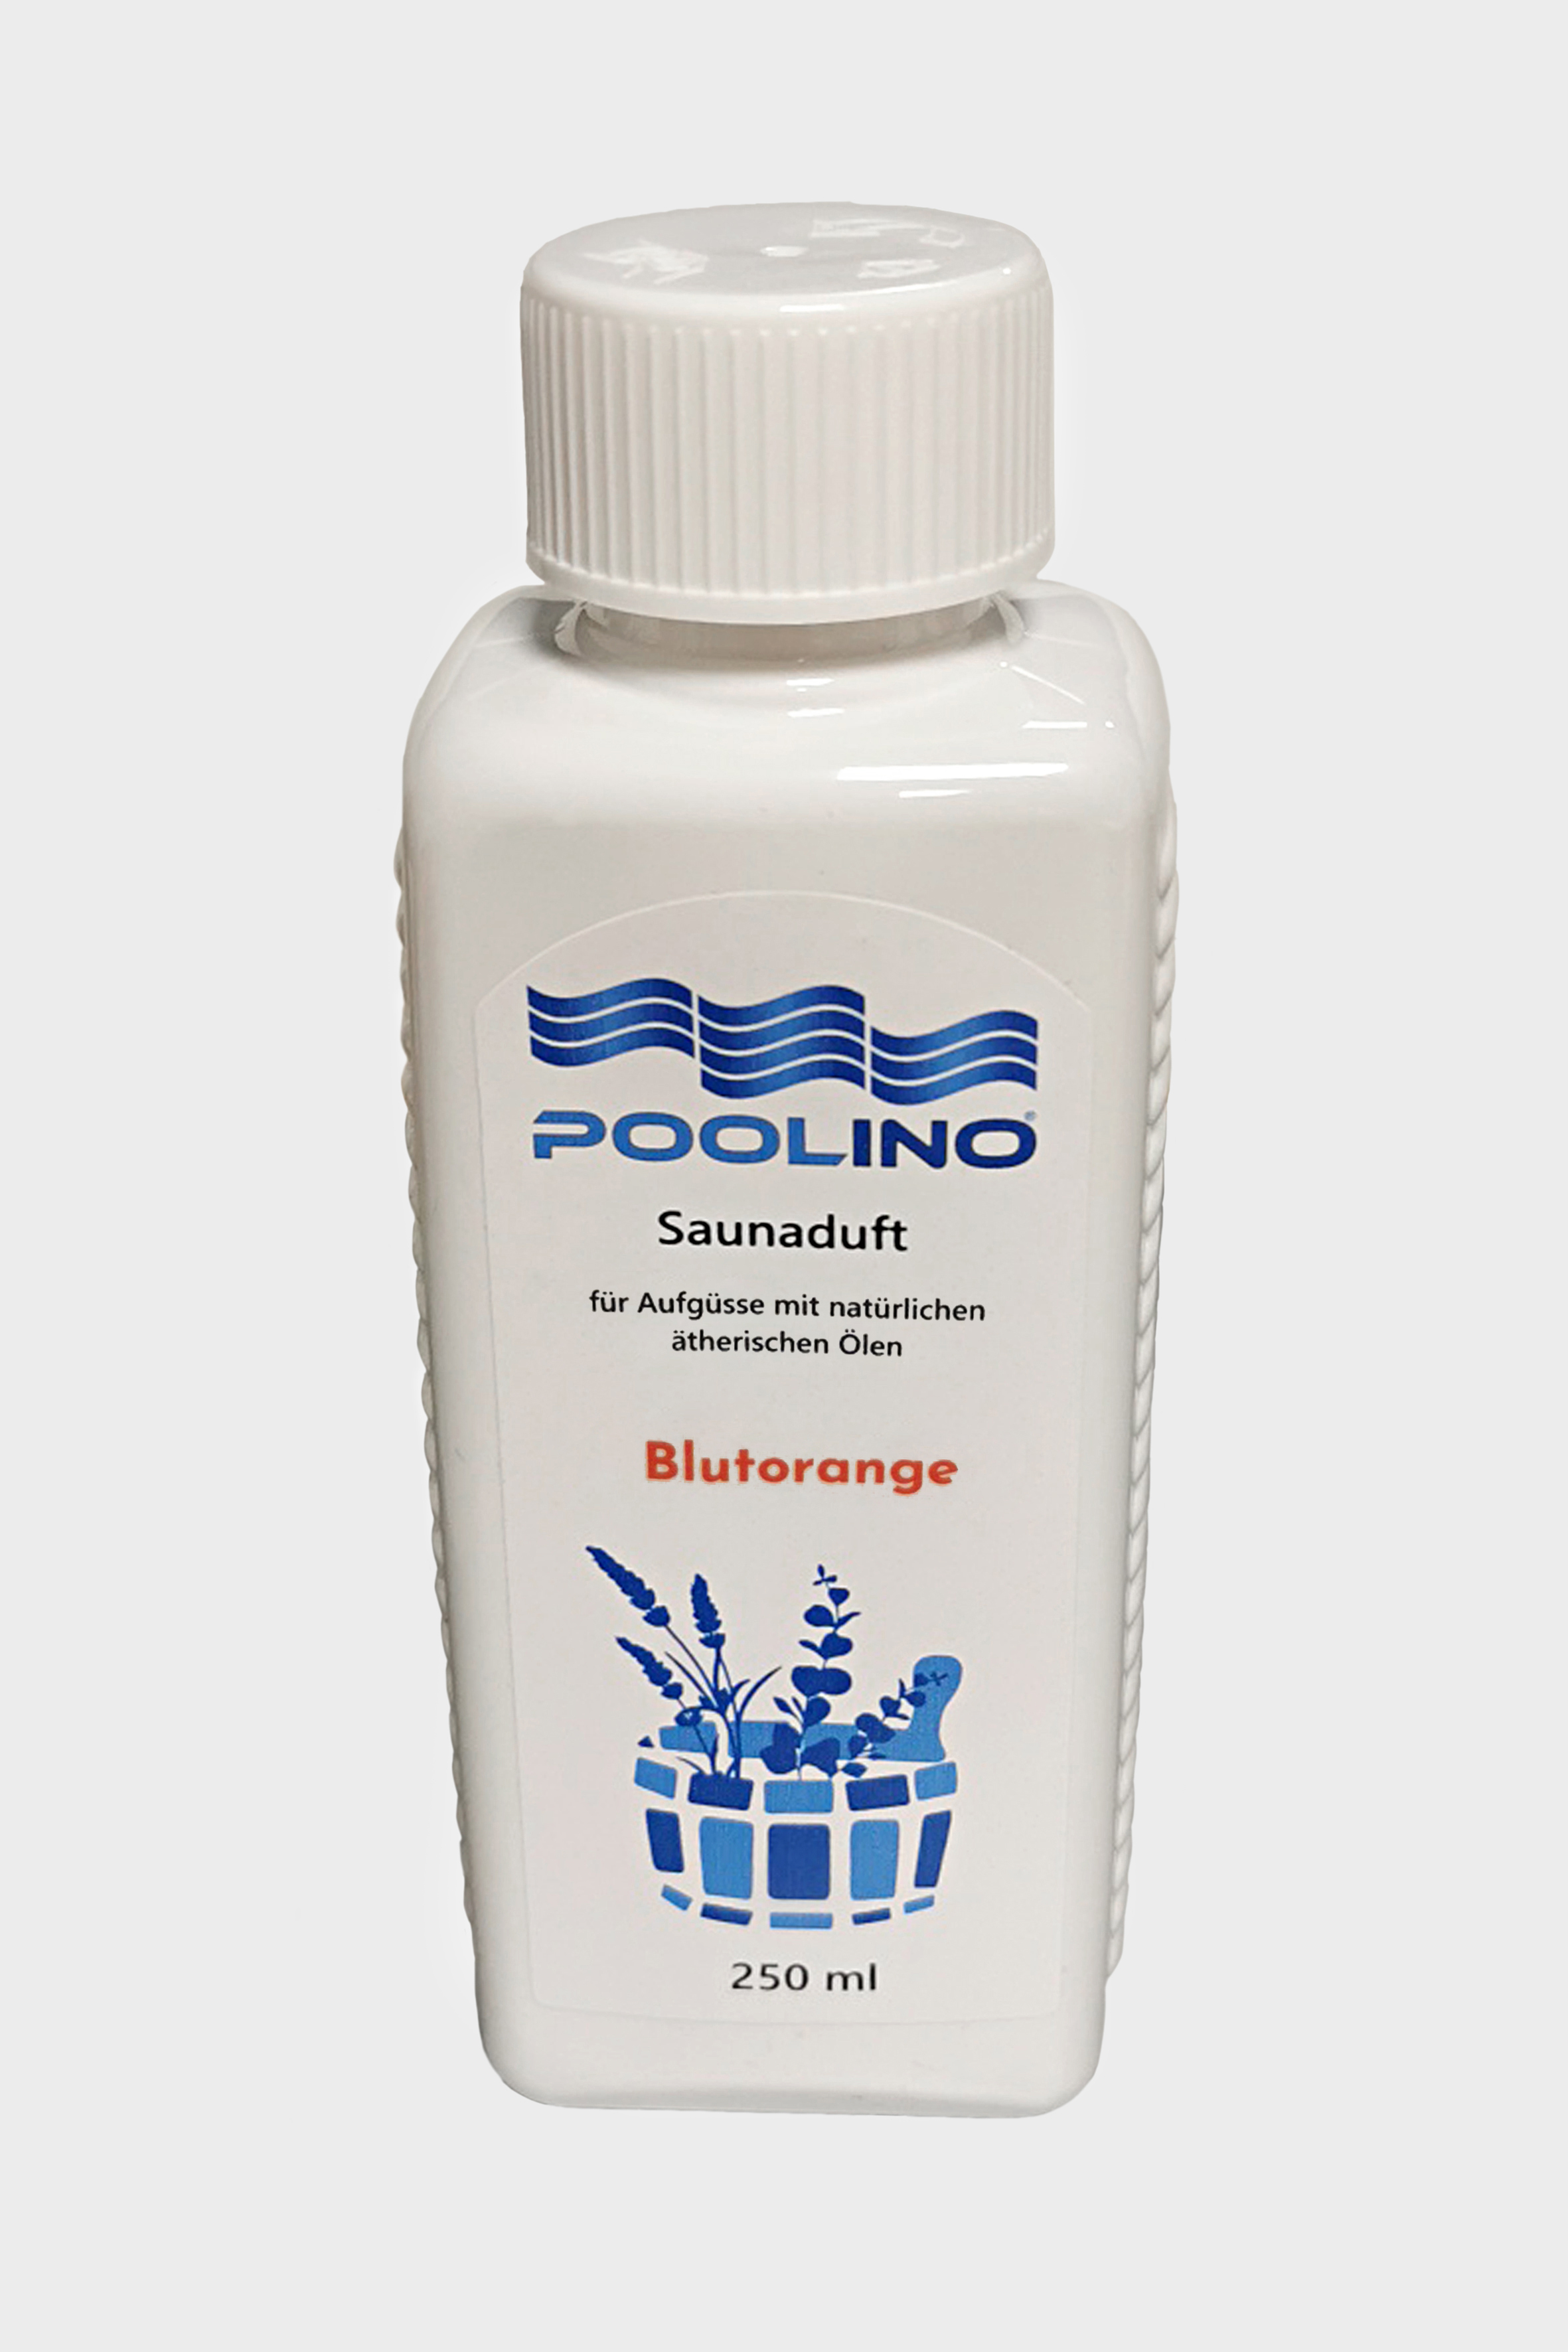 250 ml Poolino® Saunaduft Blutorange Aufgusskonzentrat